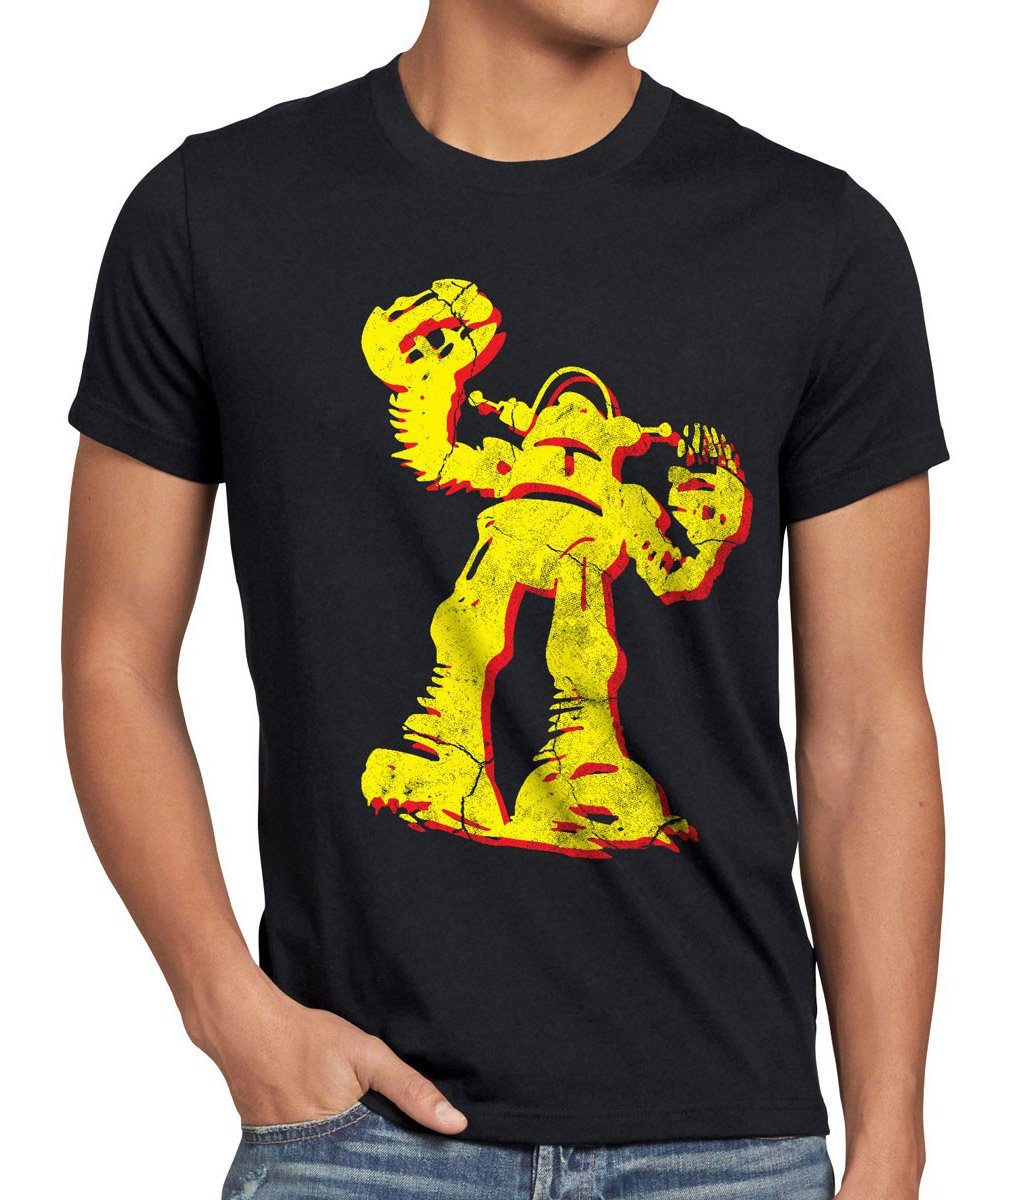 [Wird zu einem supergünstigen Preis angeboten!] style3 Print-Shirt Herren T-Shirt Hero Theory Serie Robot Comic TV Roboter schwarz Bang Cooper Sheldon Big